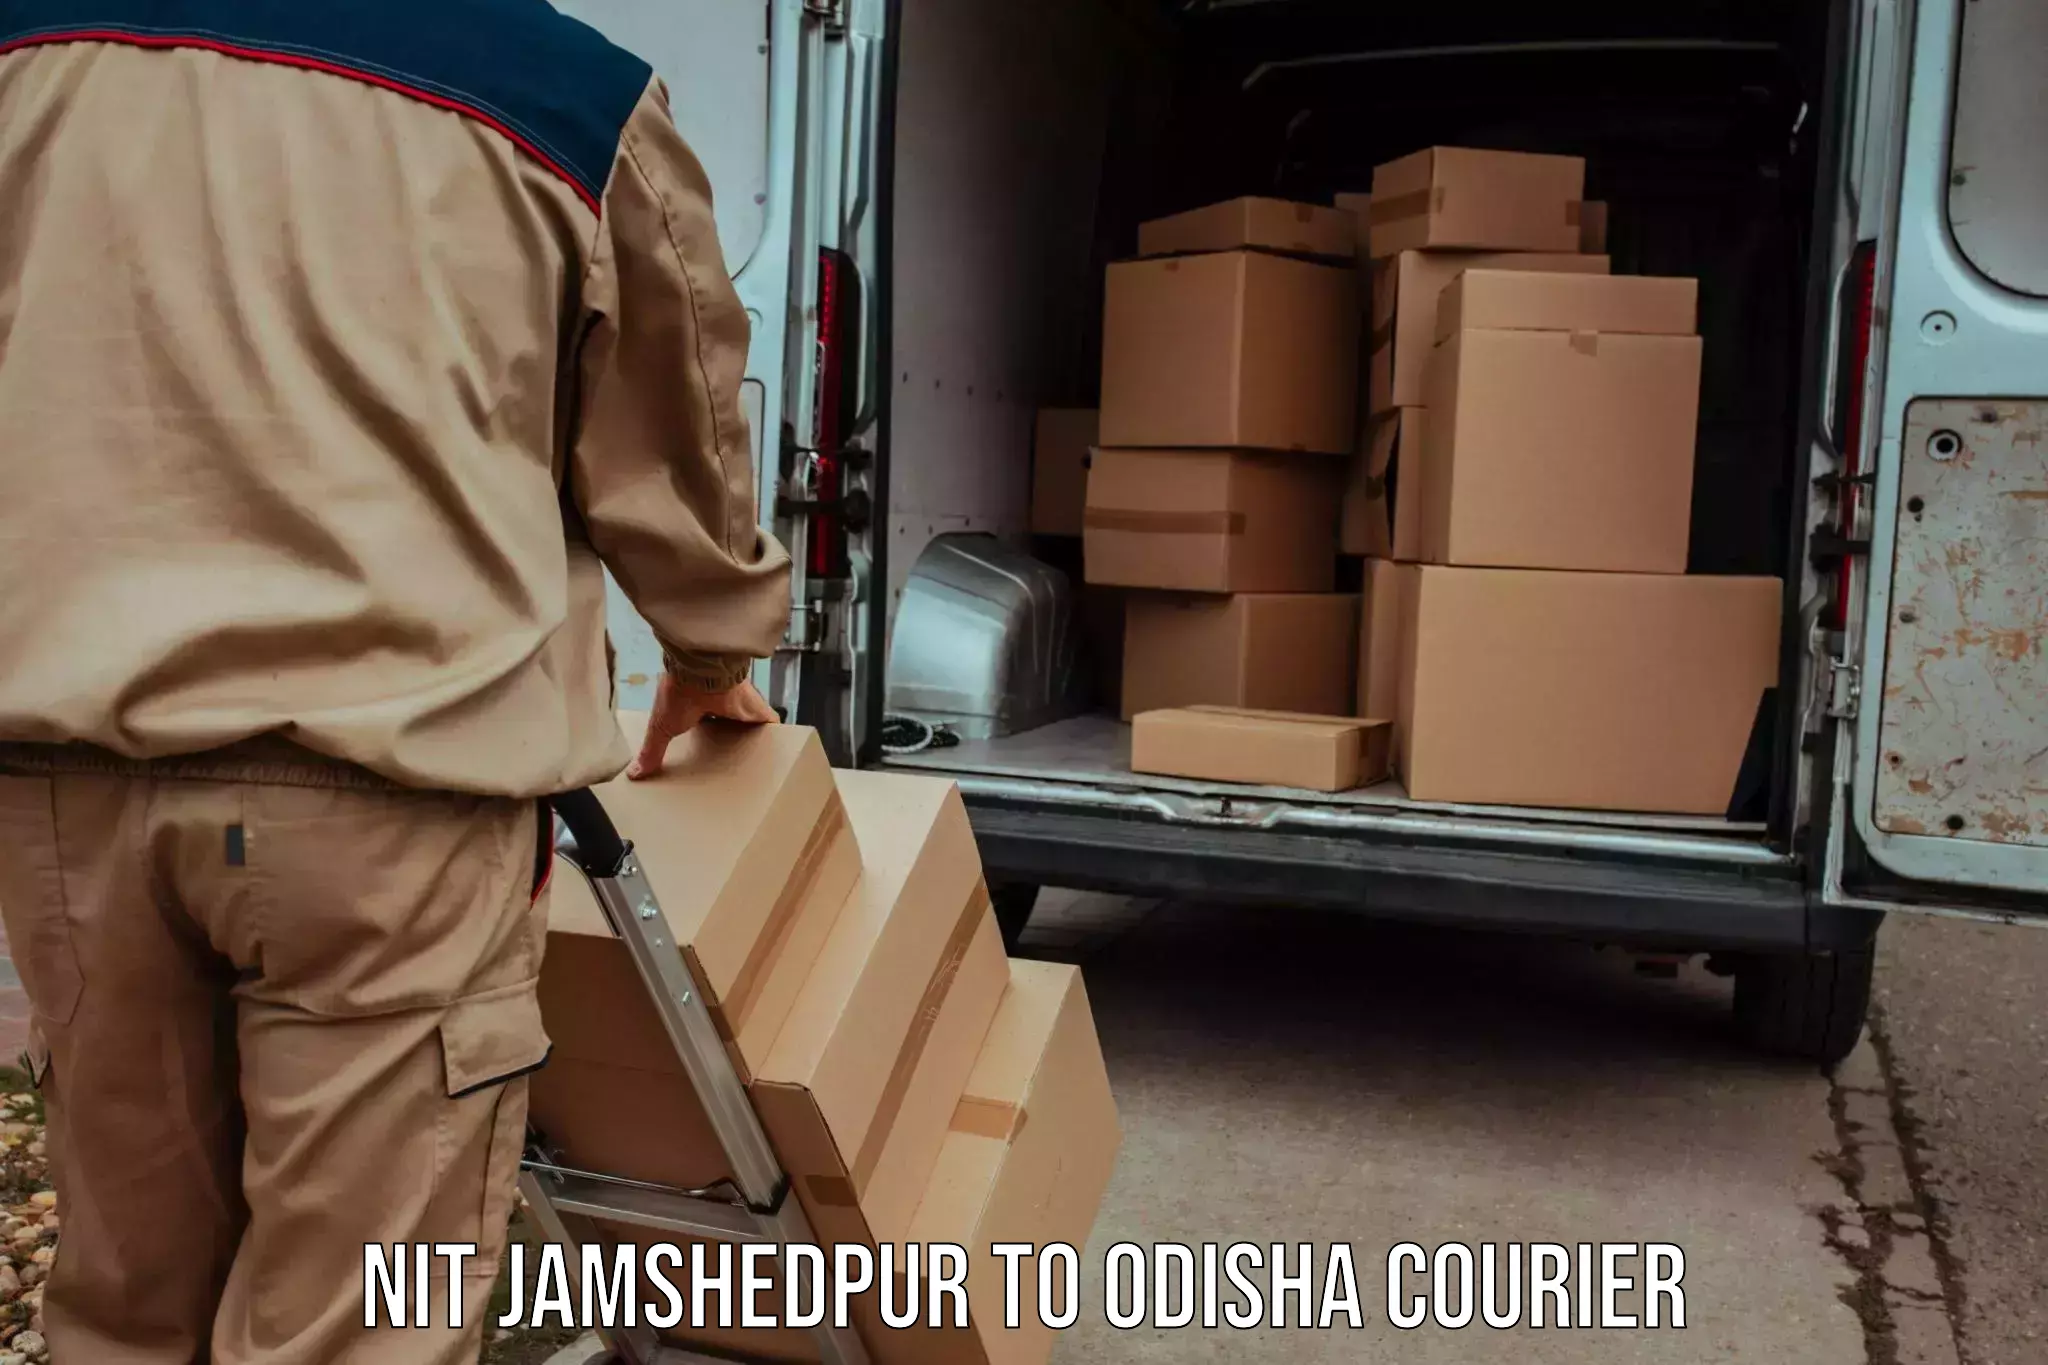 Digital courier platforms NIT Jamshedpur to Balinga